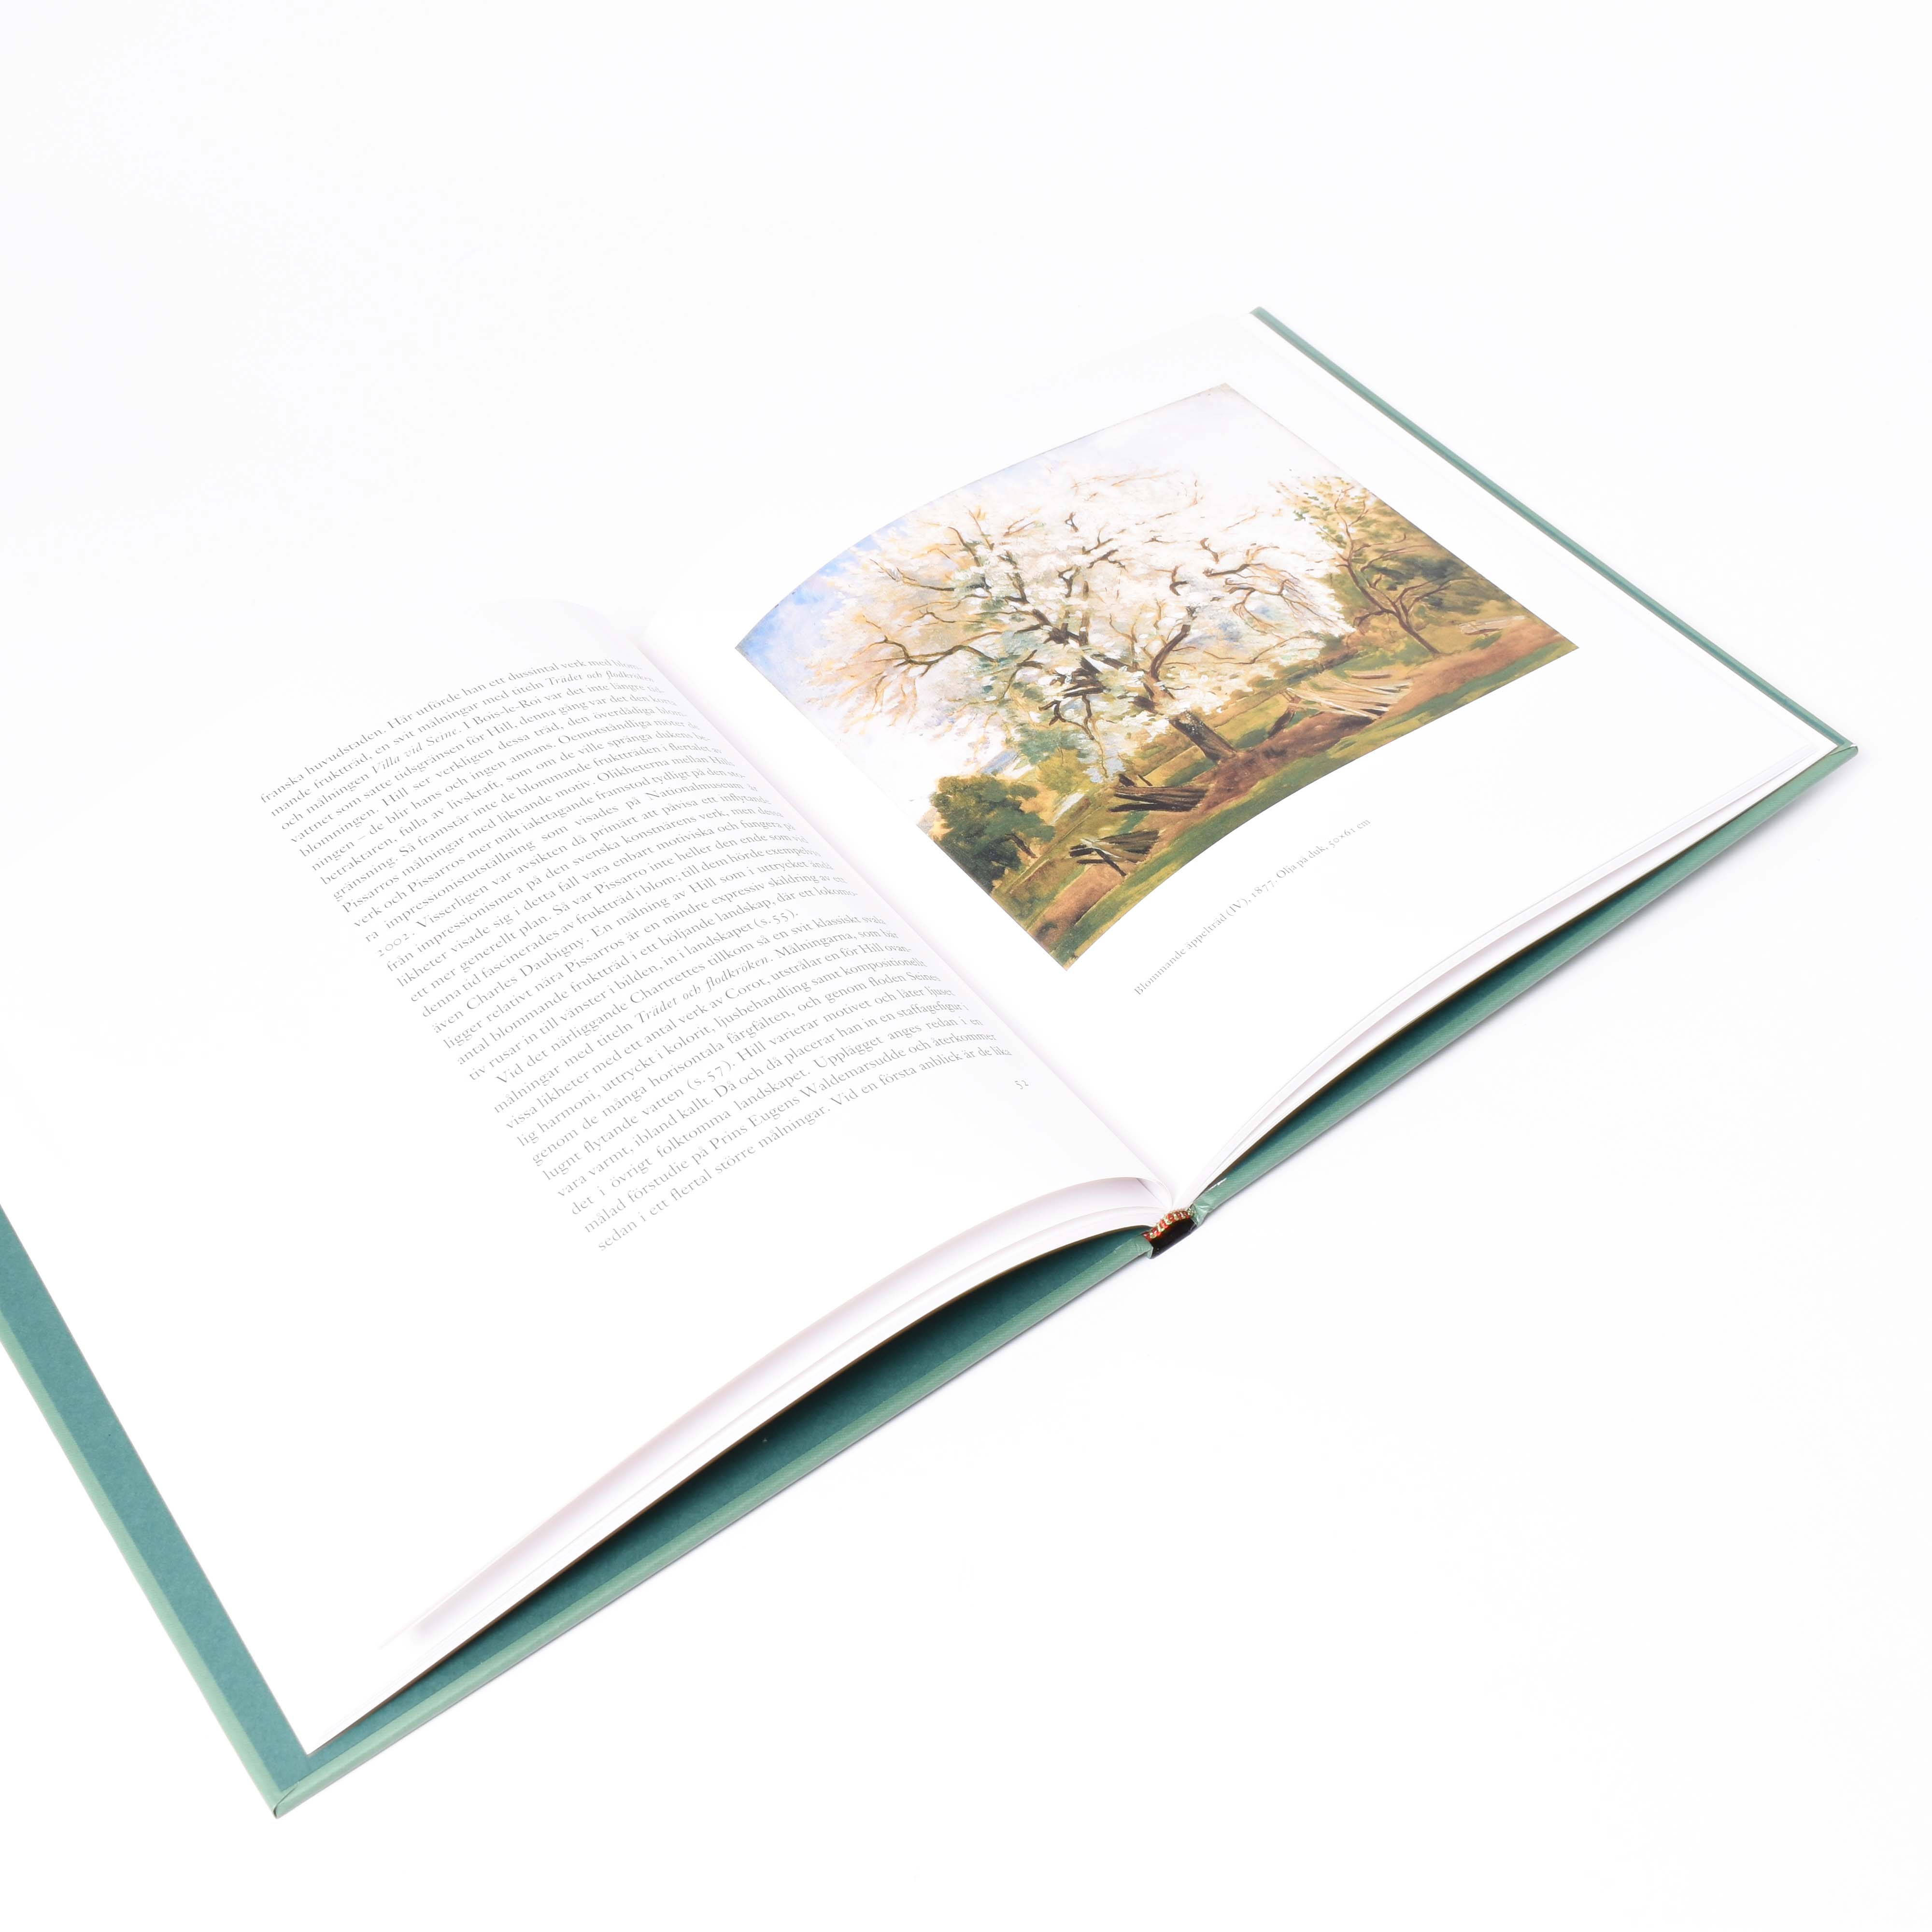 insida i boken carl fredrik hill med bild på målning med träd av konstnären